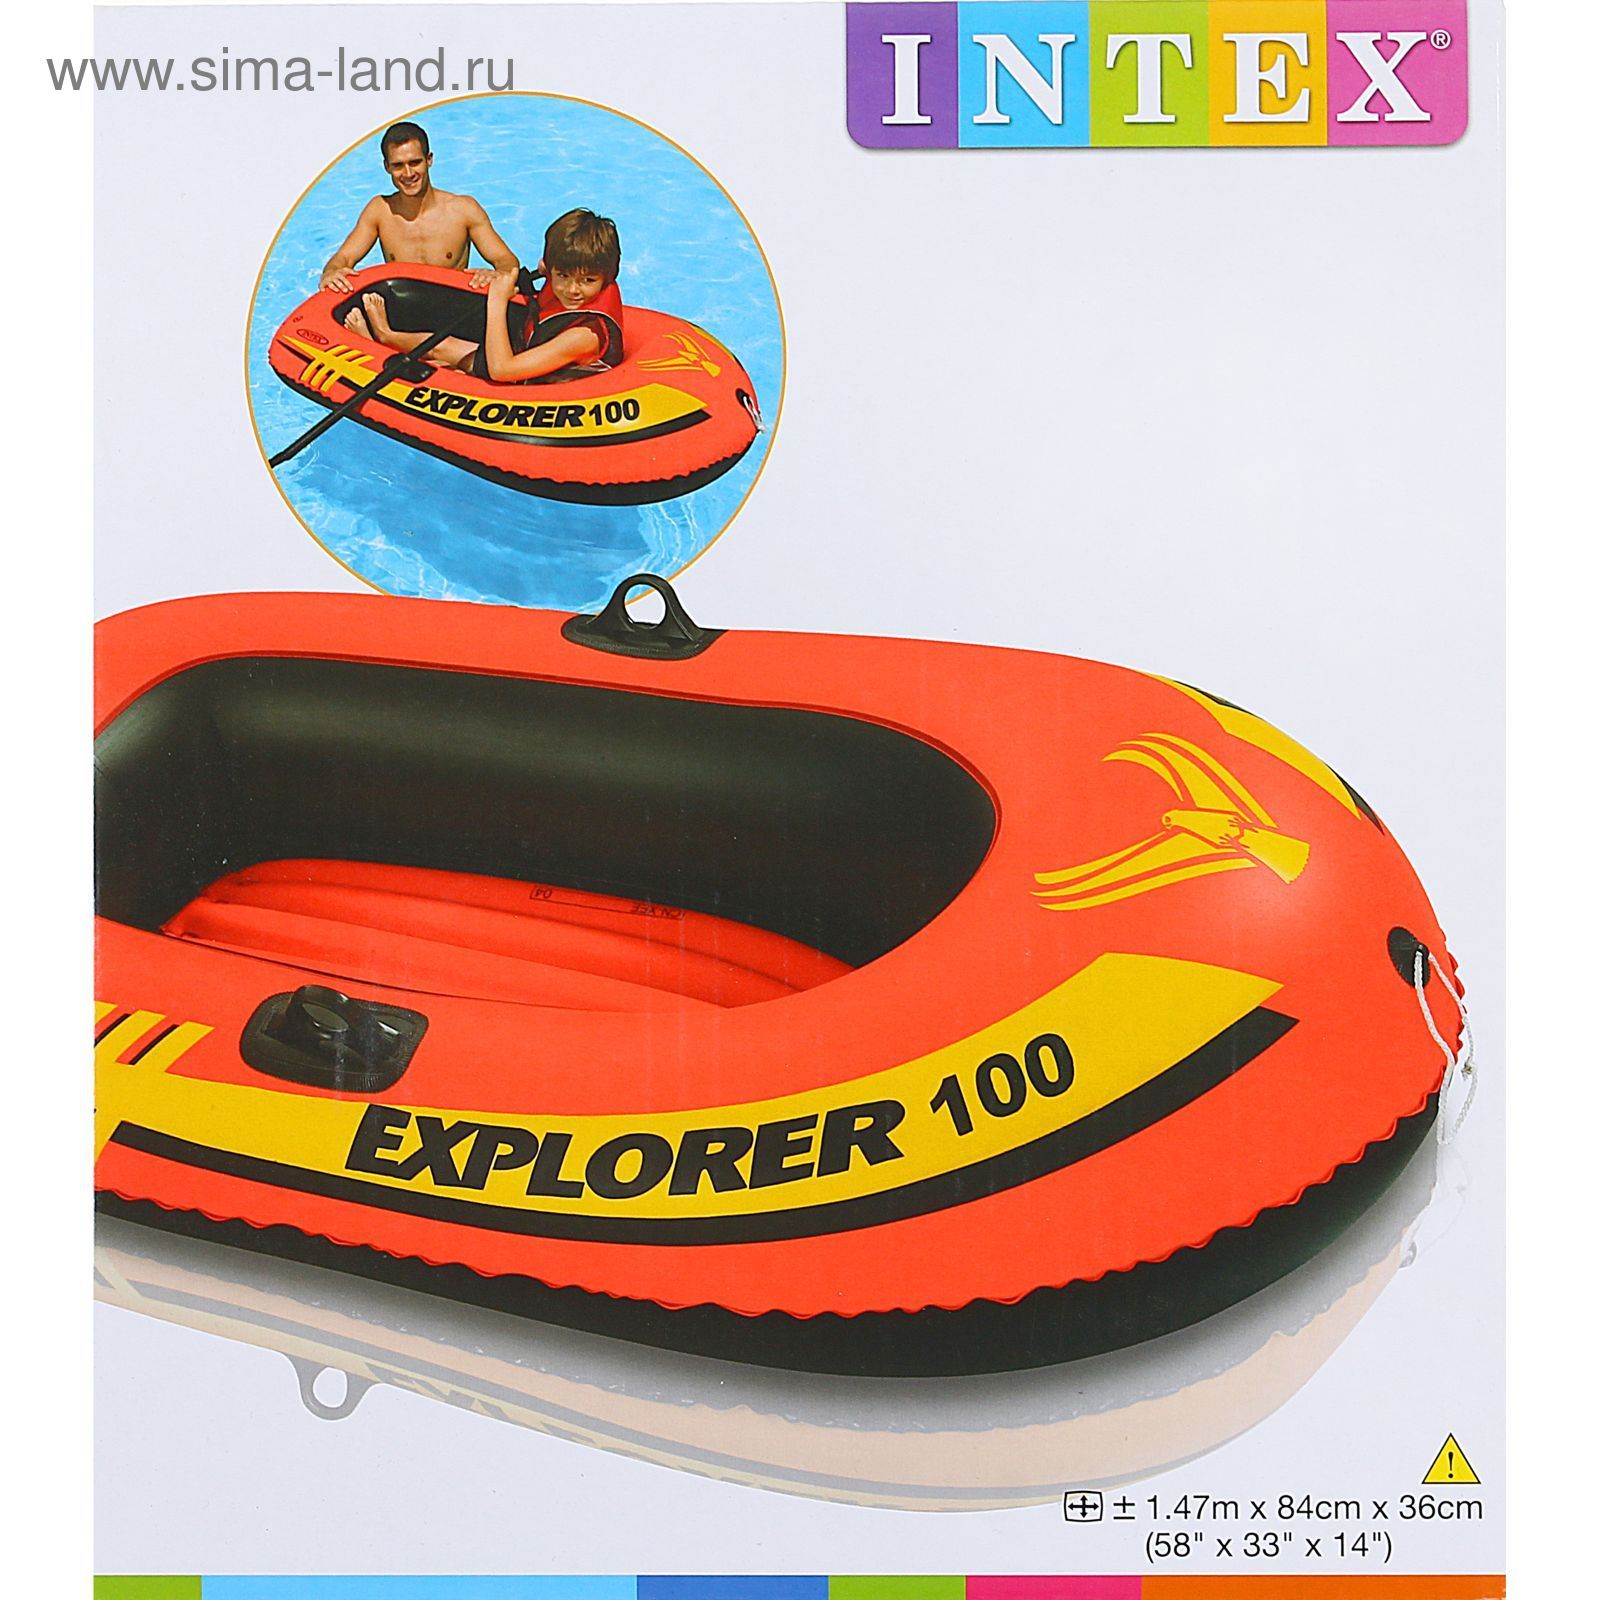 Лодка Explorer 100 одноместная до 55 кг, 147х84х36 см, от 6 лет INTEX